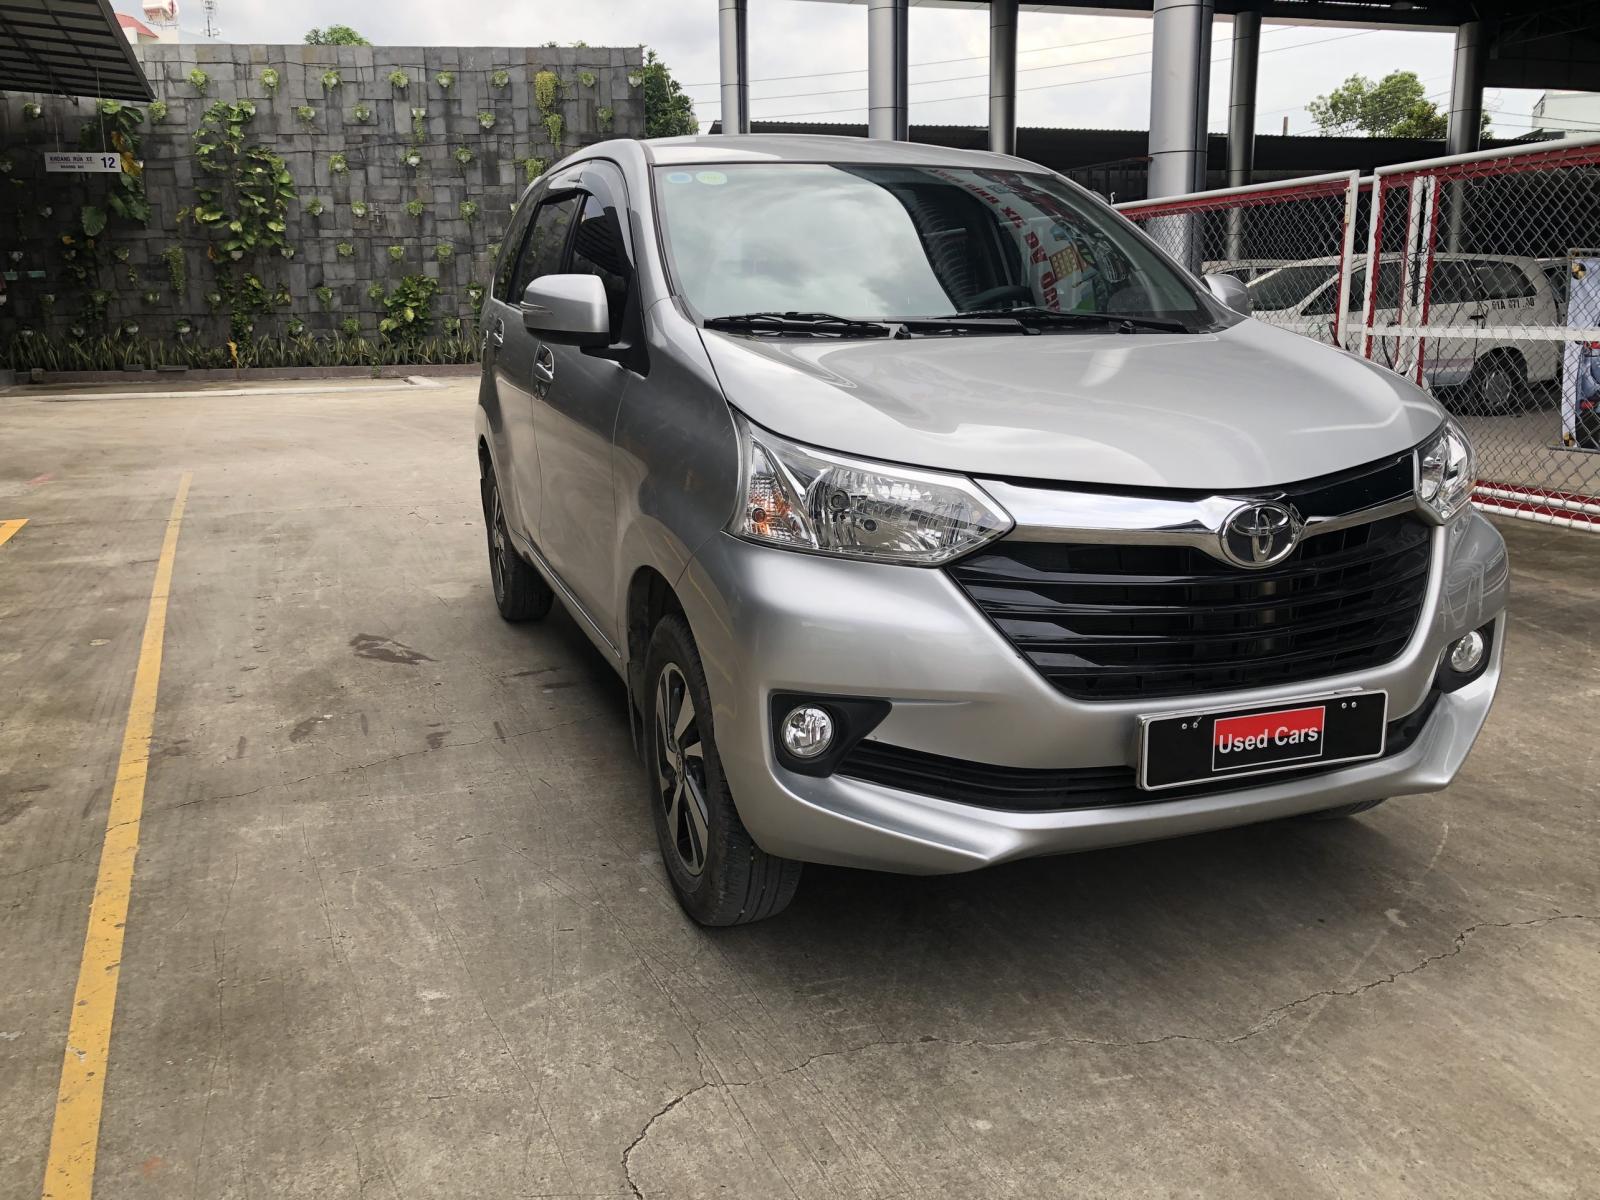 Toyota Toyota khác 2018 - Cần bán xe Toyota Avanza đời 2018, màu bạc, nhập khẩu chính hãng